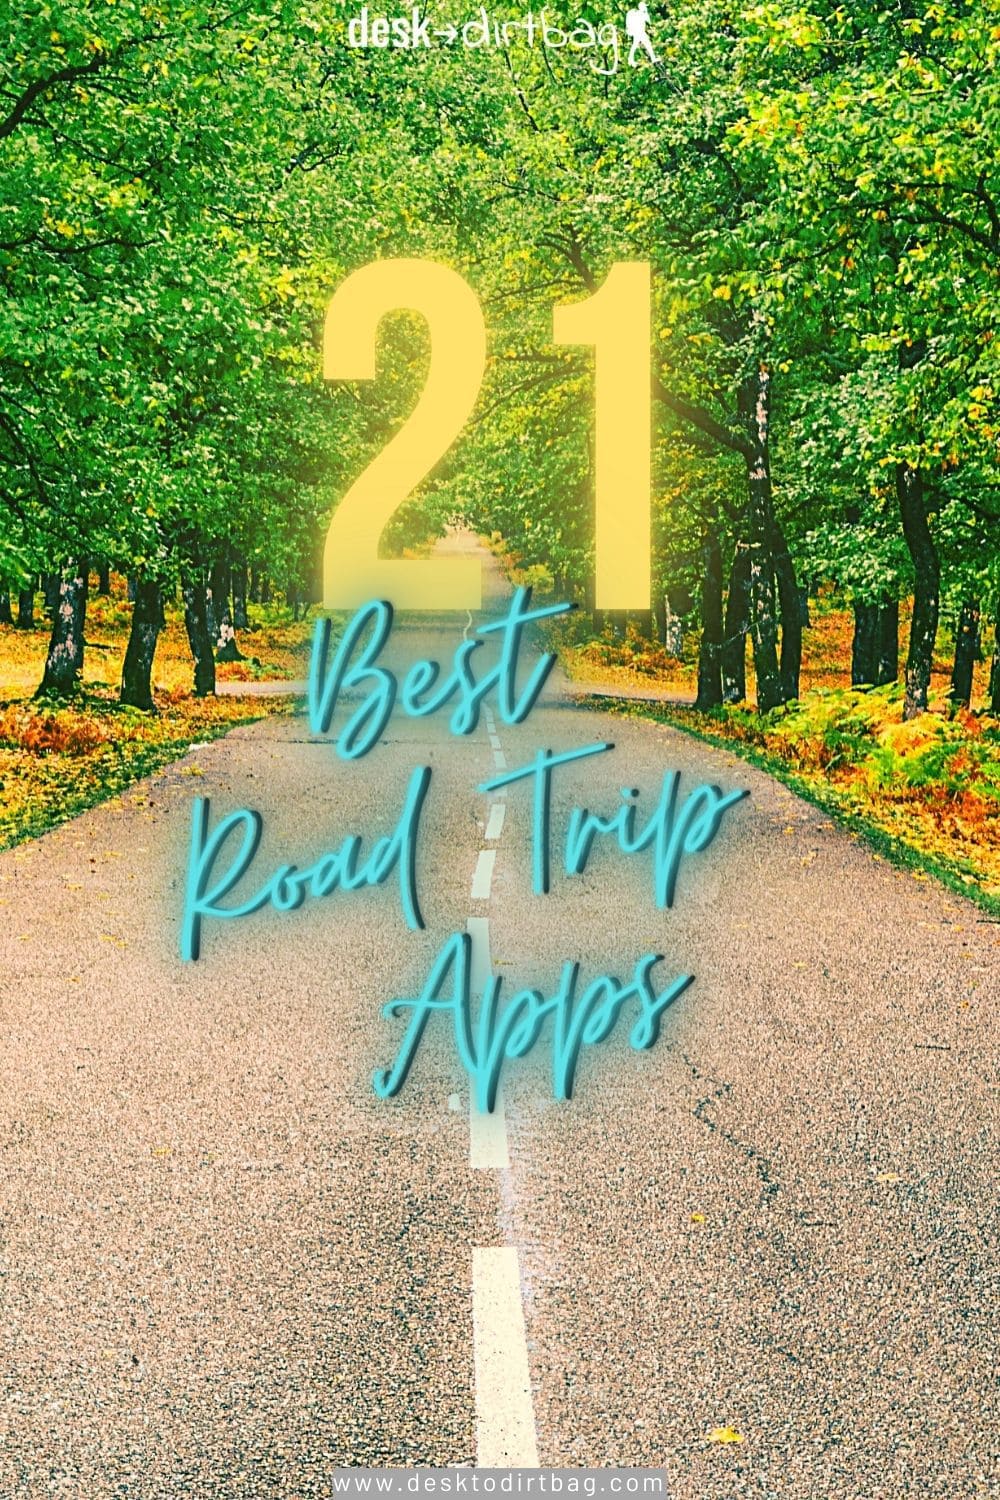 #1 road trip app